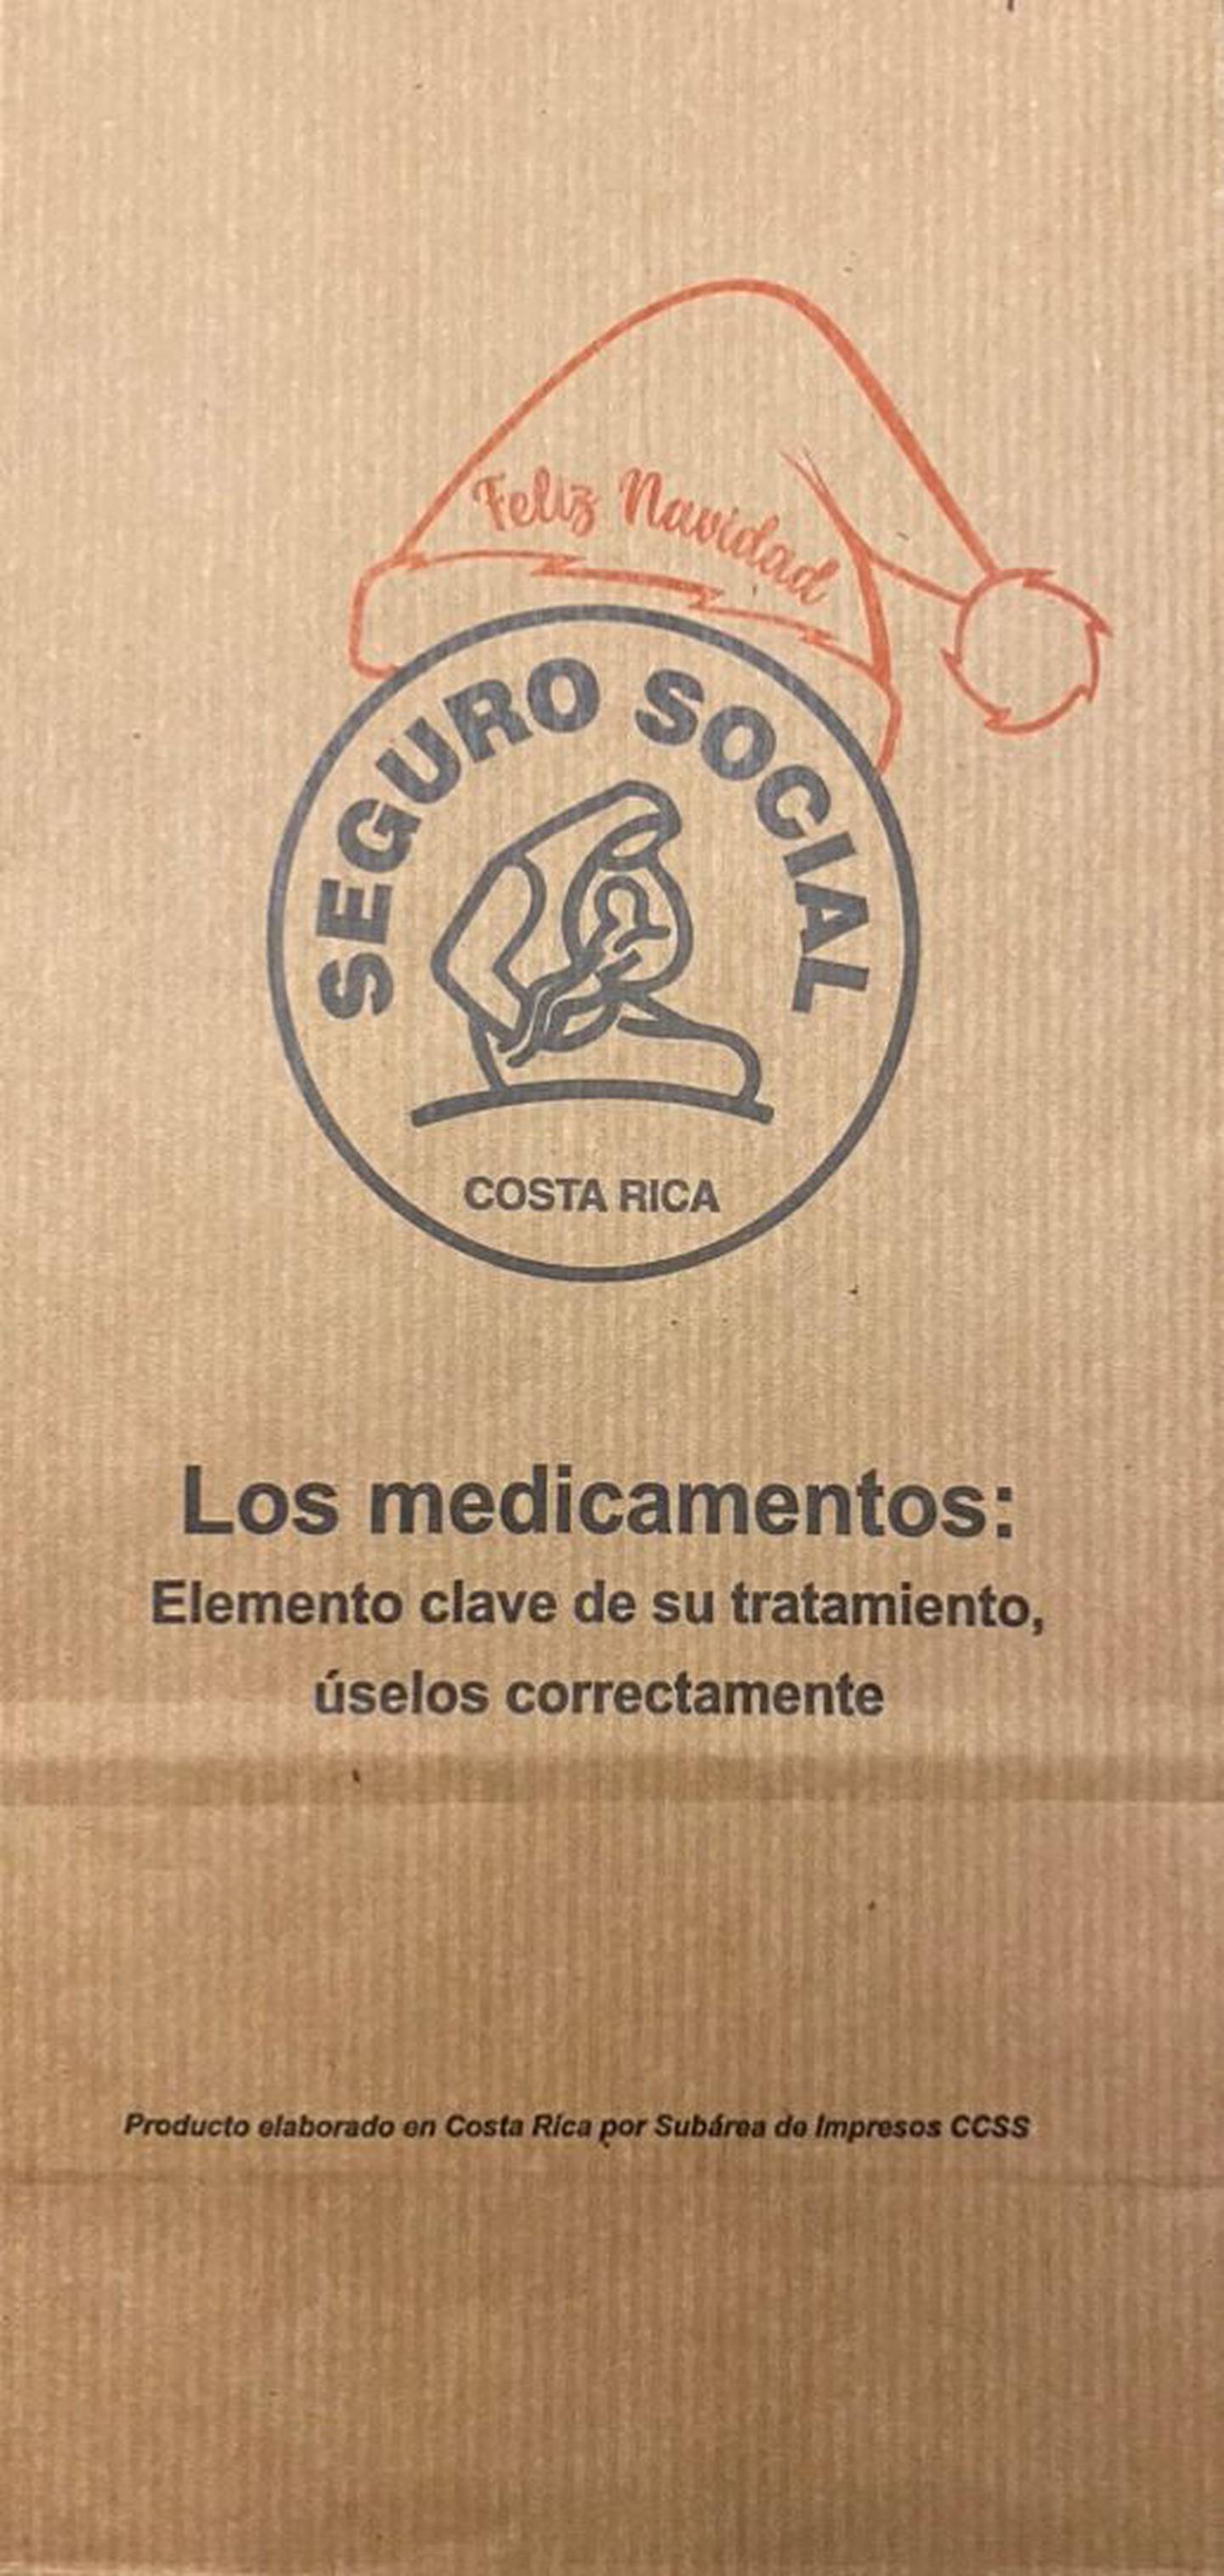 Esta es una linda noticias Navideña, pero que también trae un gran mensaje para todos: la Caja Costarricense de Seguro Social (Caja) adornó con un gorrito de Colacho las bolsas de papel en las cuales entrega medicamentos